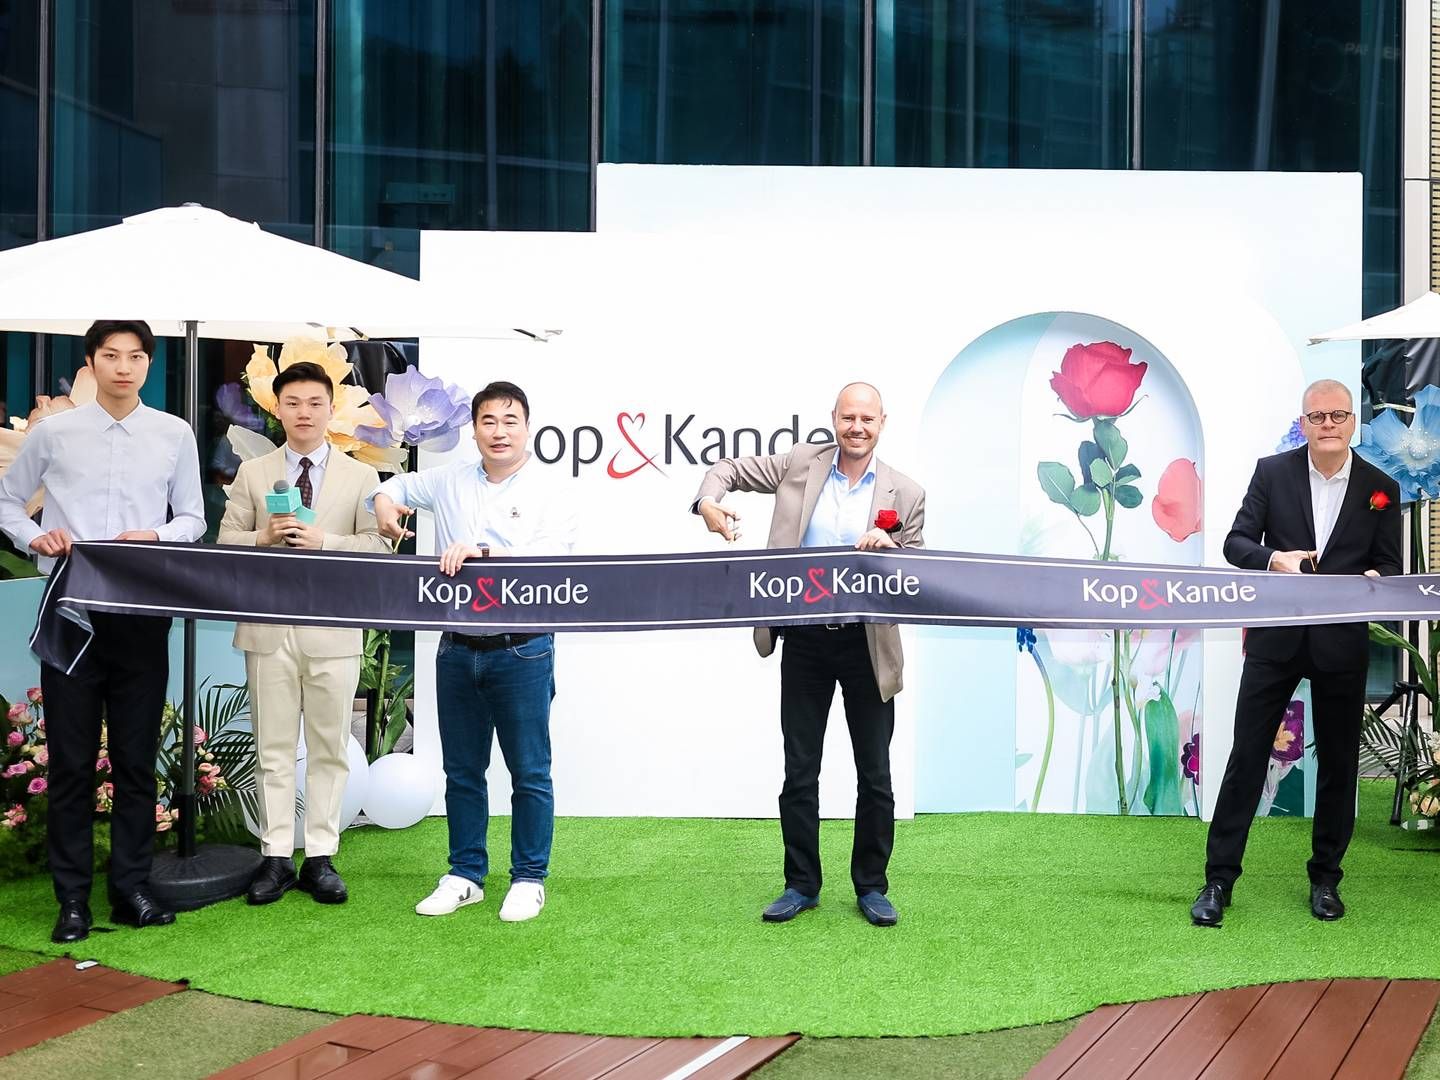 Klaus Anker Petersen (i midten) åbnede i november 2022 den første kinesiske Kop & Kande-butik i shoppingcentret Kerry Centre i Shanghai. Målet er ifølge frontfiguren at åbne butikker på tværs af hele Kina. | Foto: Lane House/pr